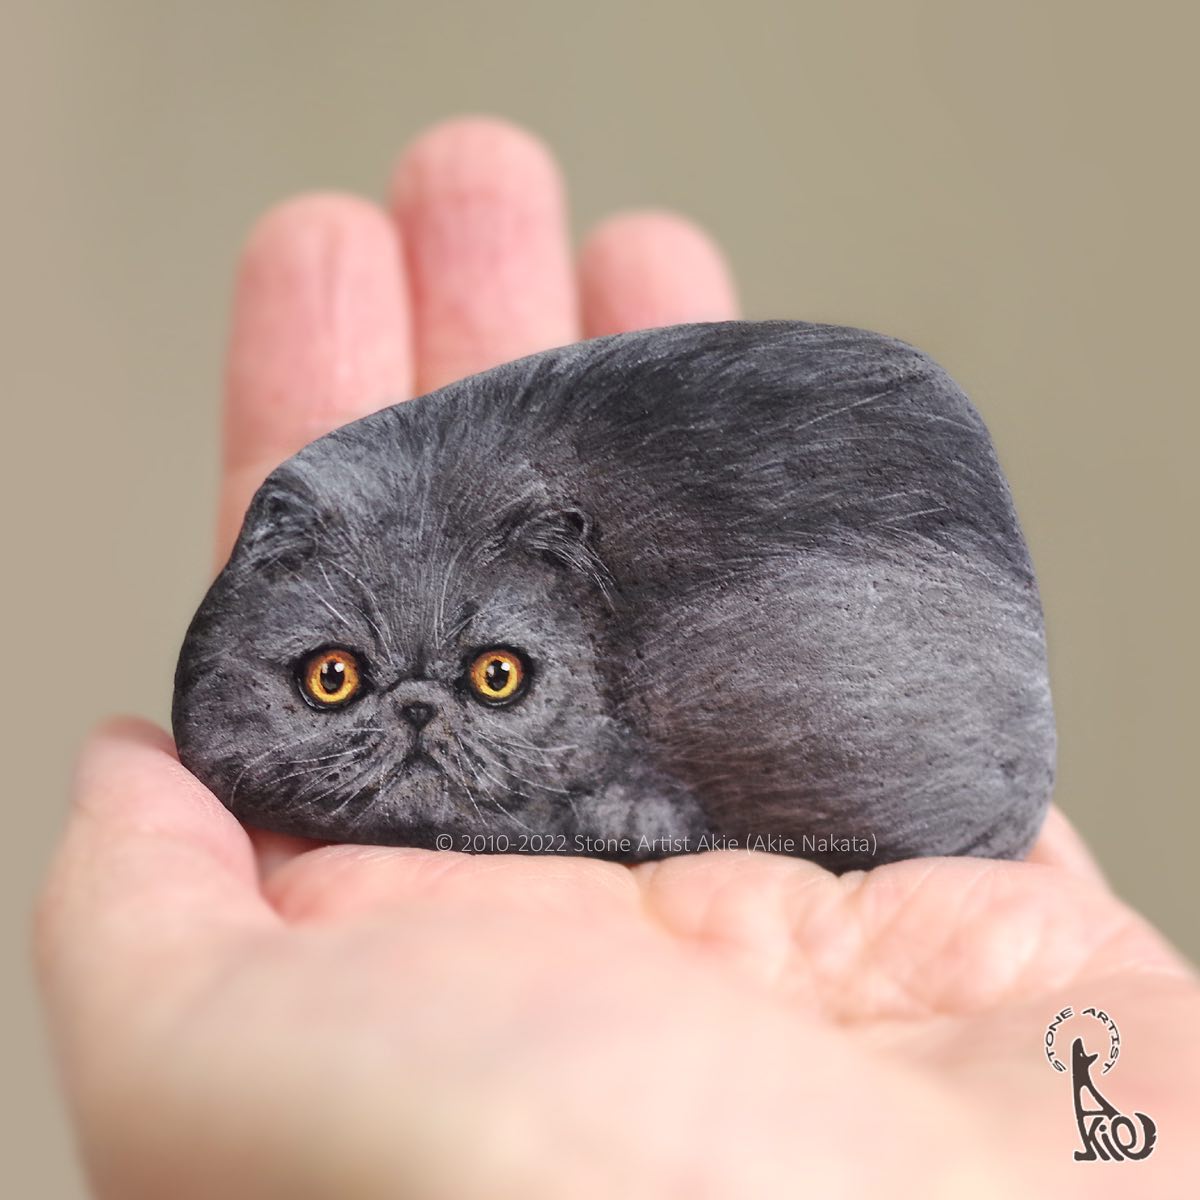 Japanese Artist Akie Nakata Turns Rocks Into Cute Little Animals 